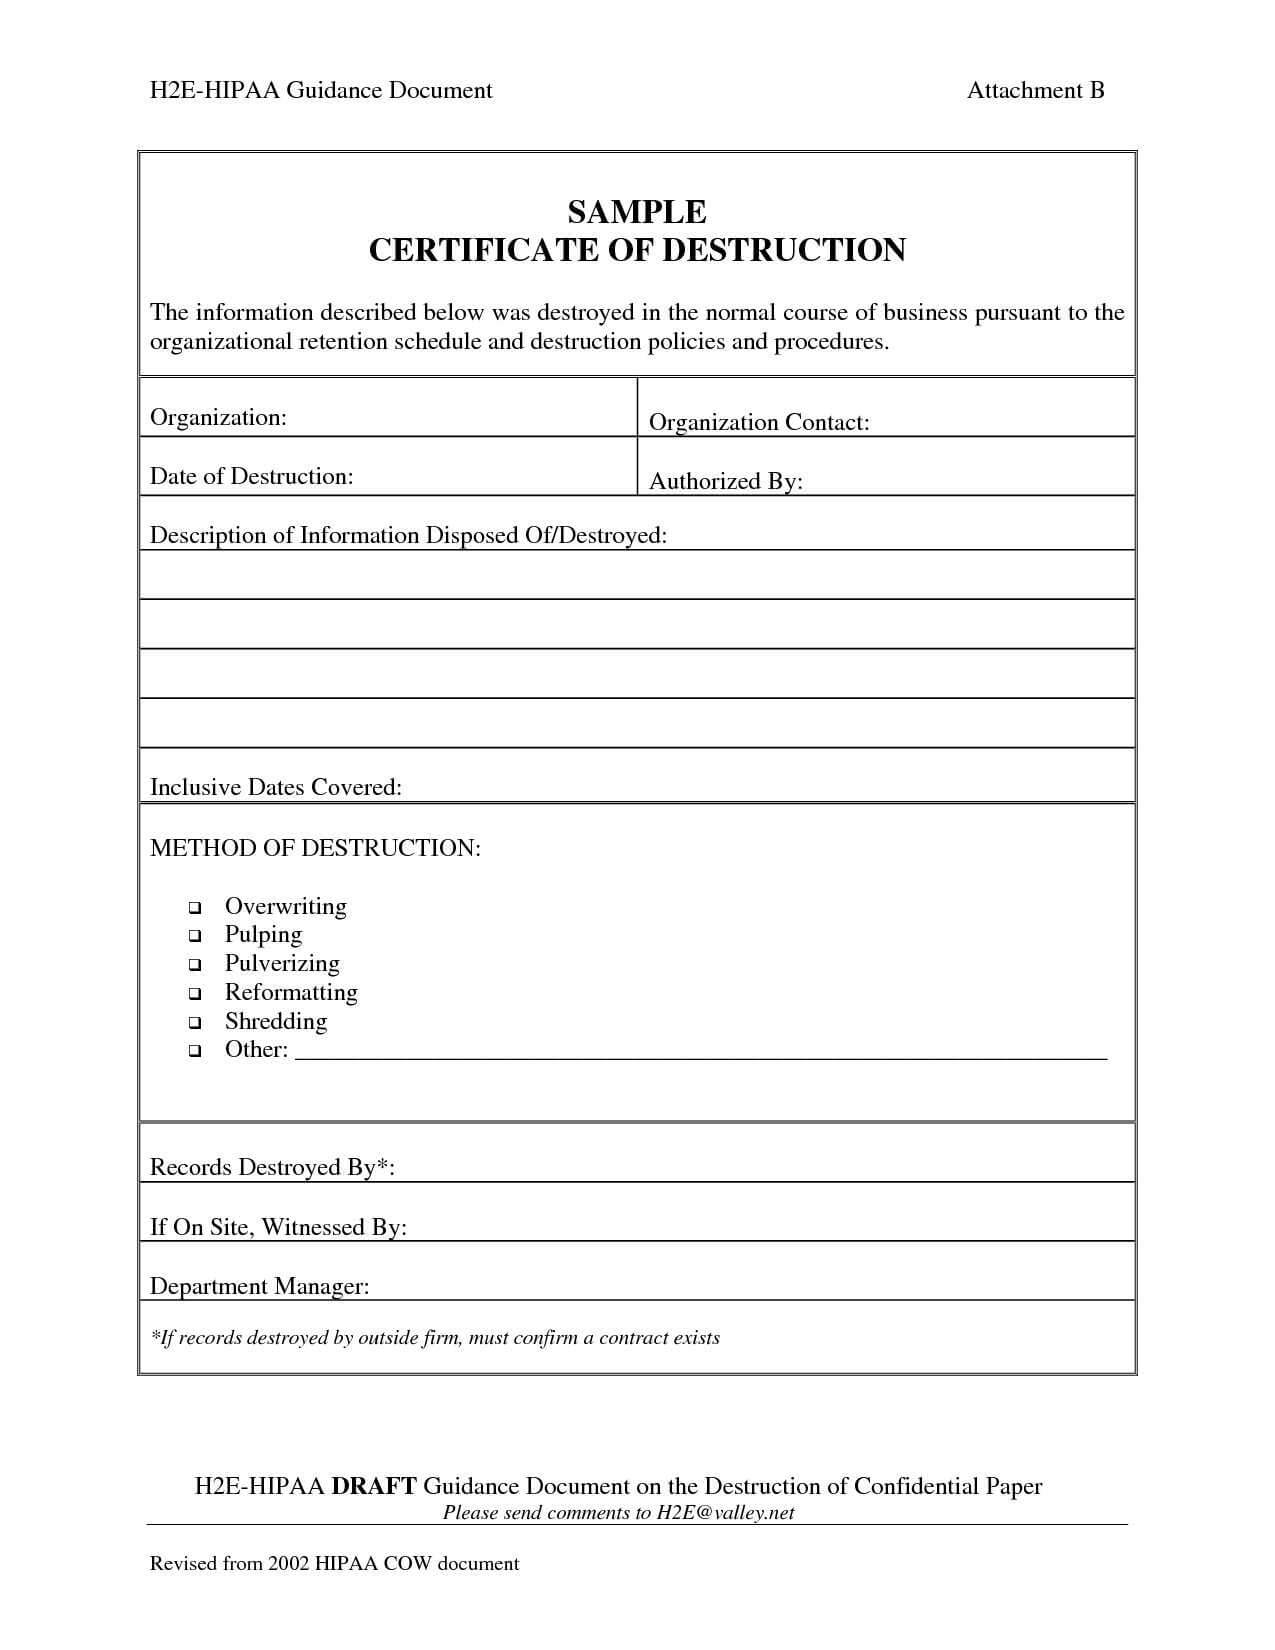 001 Template Ideas Certificate Of Destruction Frightening Pertaining To Destruction Certificate Template